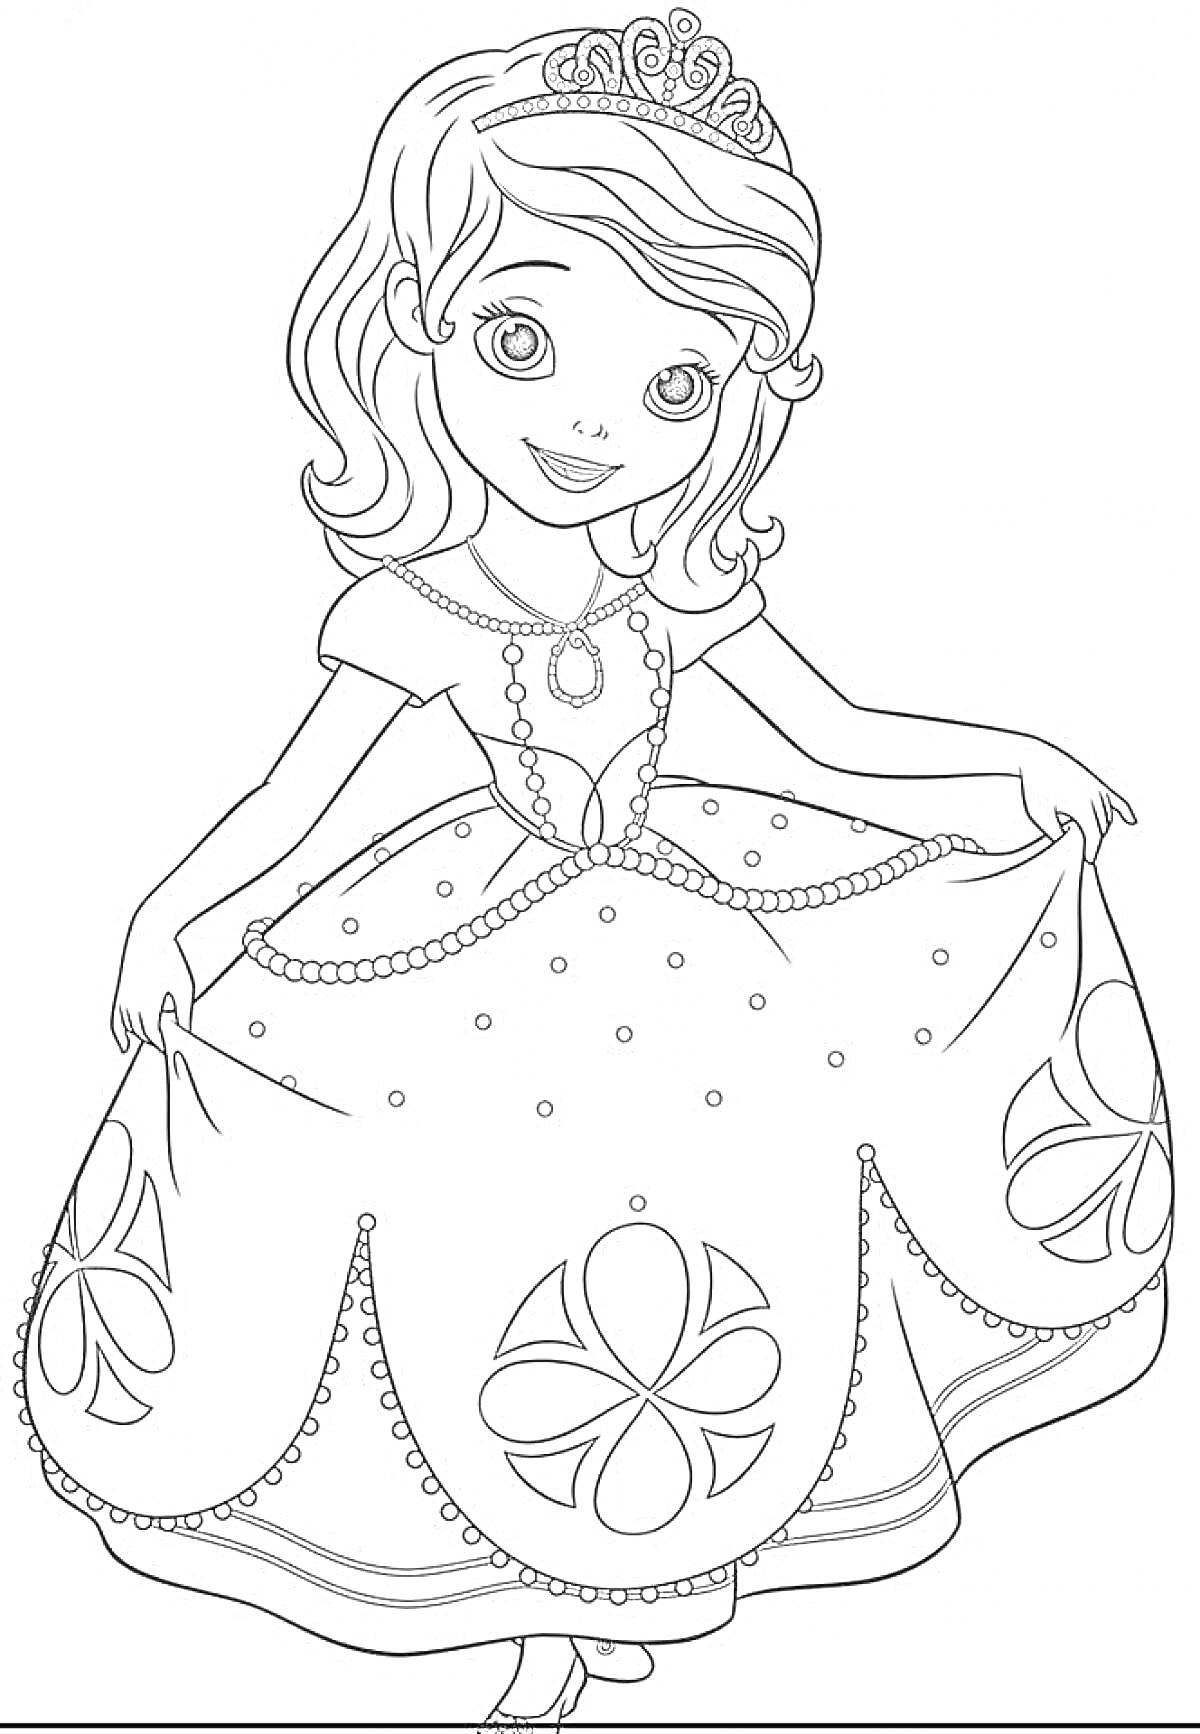 Раскраска Принцесса в платье с короной, ожерельем и узорами на юбке